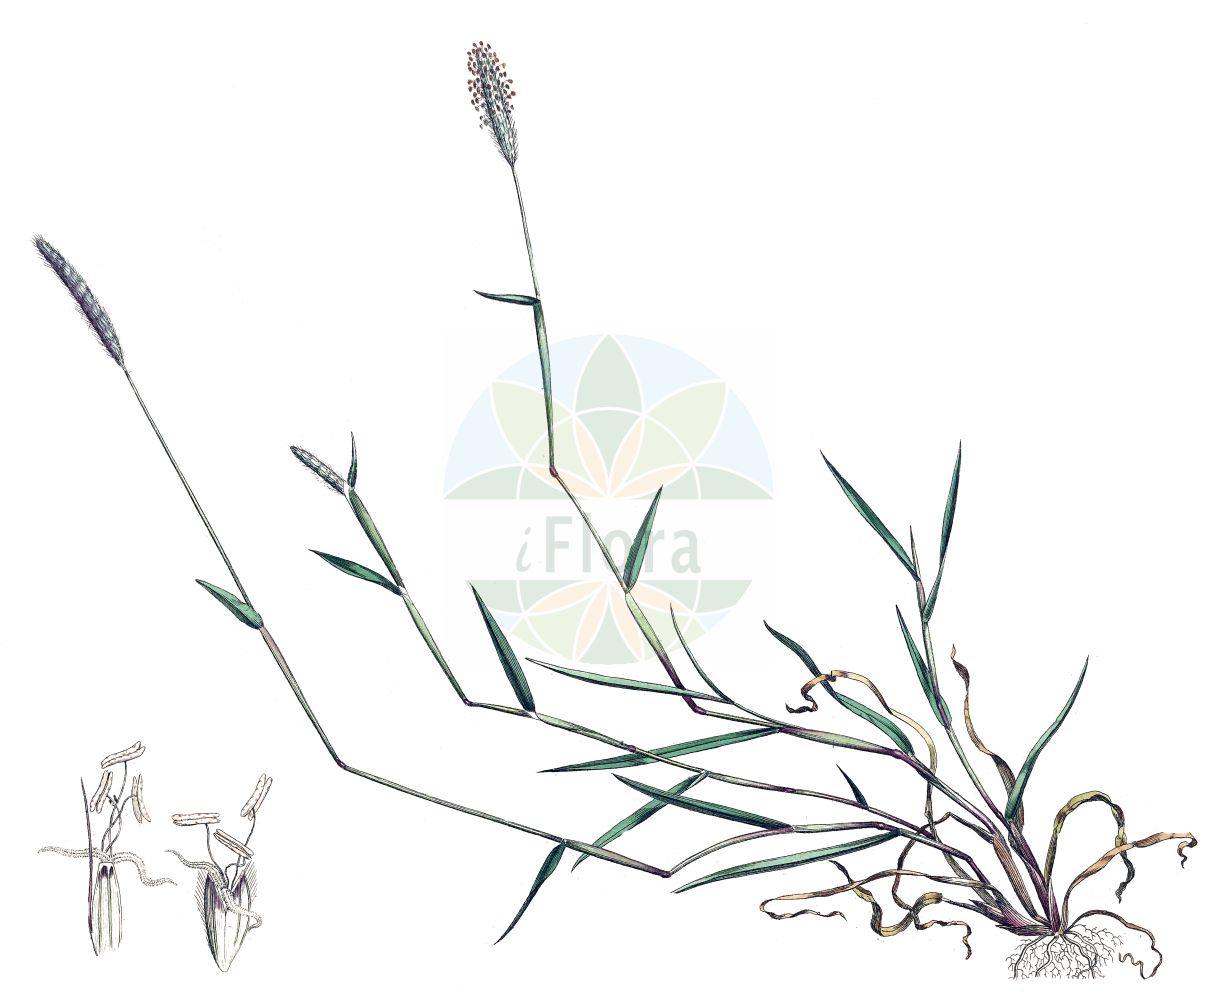 Historische Abbildung von Alopecurus geniculatus (Knick-Fuchsschwanzgras - Marsh Foxtail). Das Bild zeigt Blatt, Bluete, Frucht und Same. ---- Historical Drawing of Alopecurus geniculatus (Knick-Fuchsschwanzgras - Marsh Foxtail). The image is showing leaf, flower, fruit and seed.(Alopecurus geniculatus,Knick-Fuchsschwanzgras,Marsh Foxtail,Alopecurus geniculatus,Knick-Fuchsschwanzgras,Geknietes Fuchsschwanzgras,Knick-Fuchsschwanz,Marsh Foxtail,Floating Foxtail,Kneed Foxtail,Water Foxtail,Alopecurus,Fuchsschwanzgras,Foxtail,Poaceae,Süßgräser,Grass family,Blatt,Bluete,Frucht,Same,leaf,flower,fruit,seed,Curtis (1777-1798))